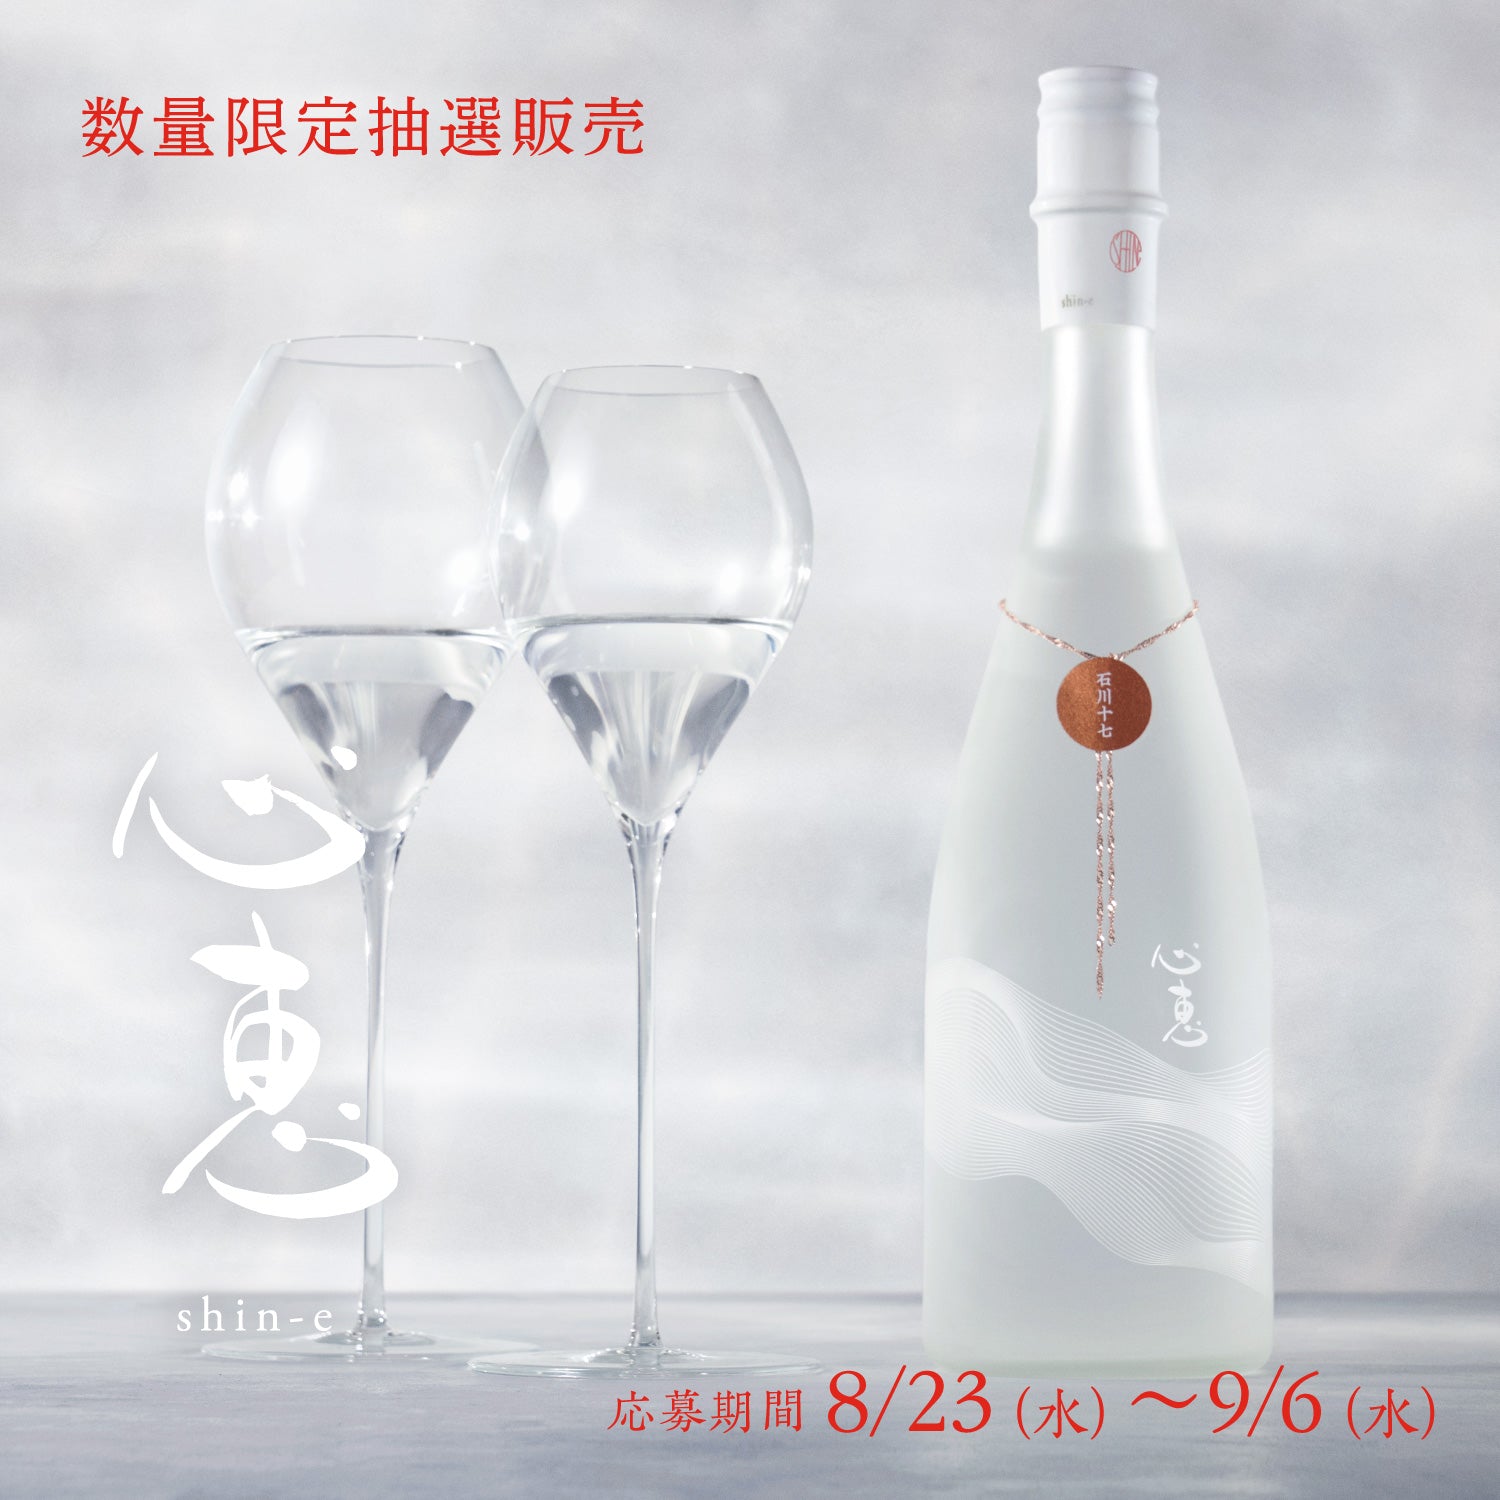 心恵 shin-e 石川十七 限定300本 日本酒 抽選販売 当選品